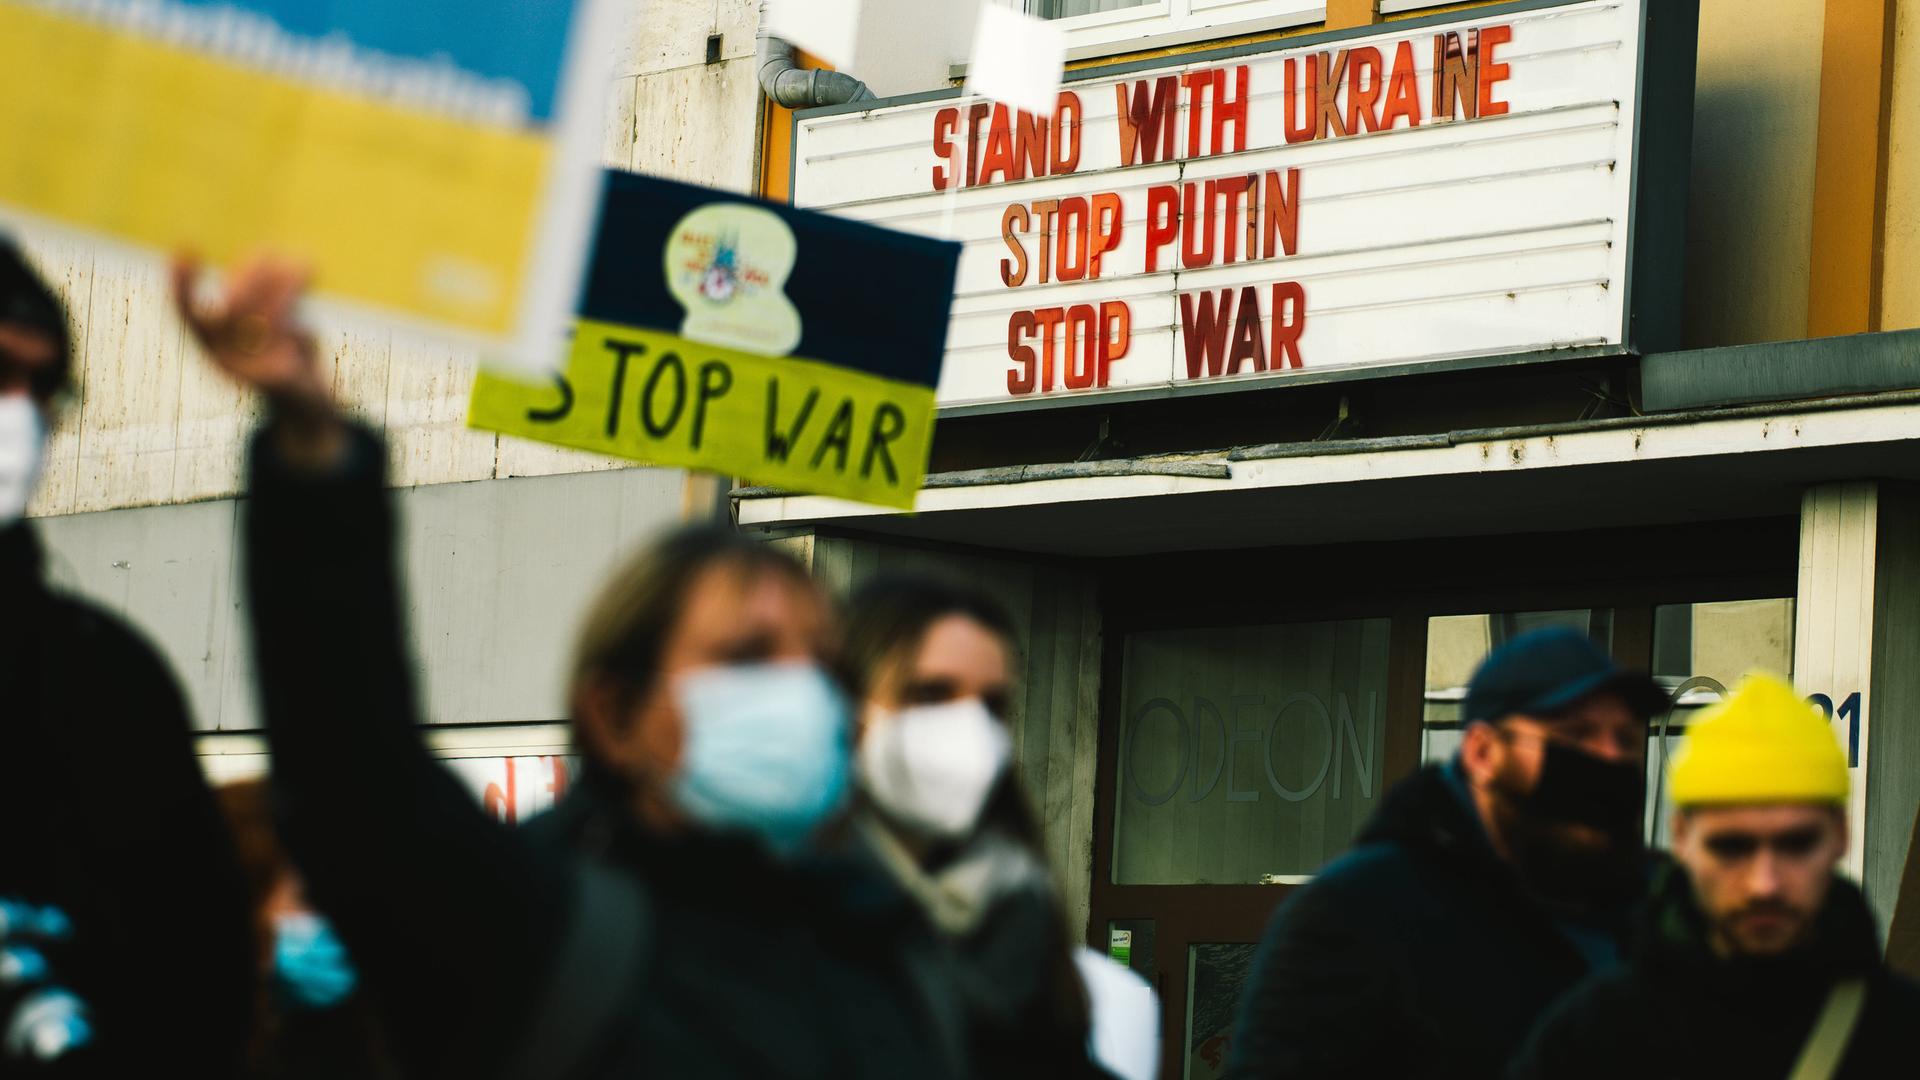 Demonstranten gehen an einem Kino vorbei. An dessen Hausfassade steht: Solidarität mit der Ukraine. Stoppt Putin. Stoppt den Krieg.